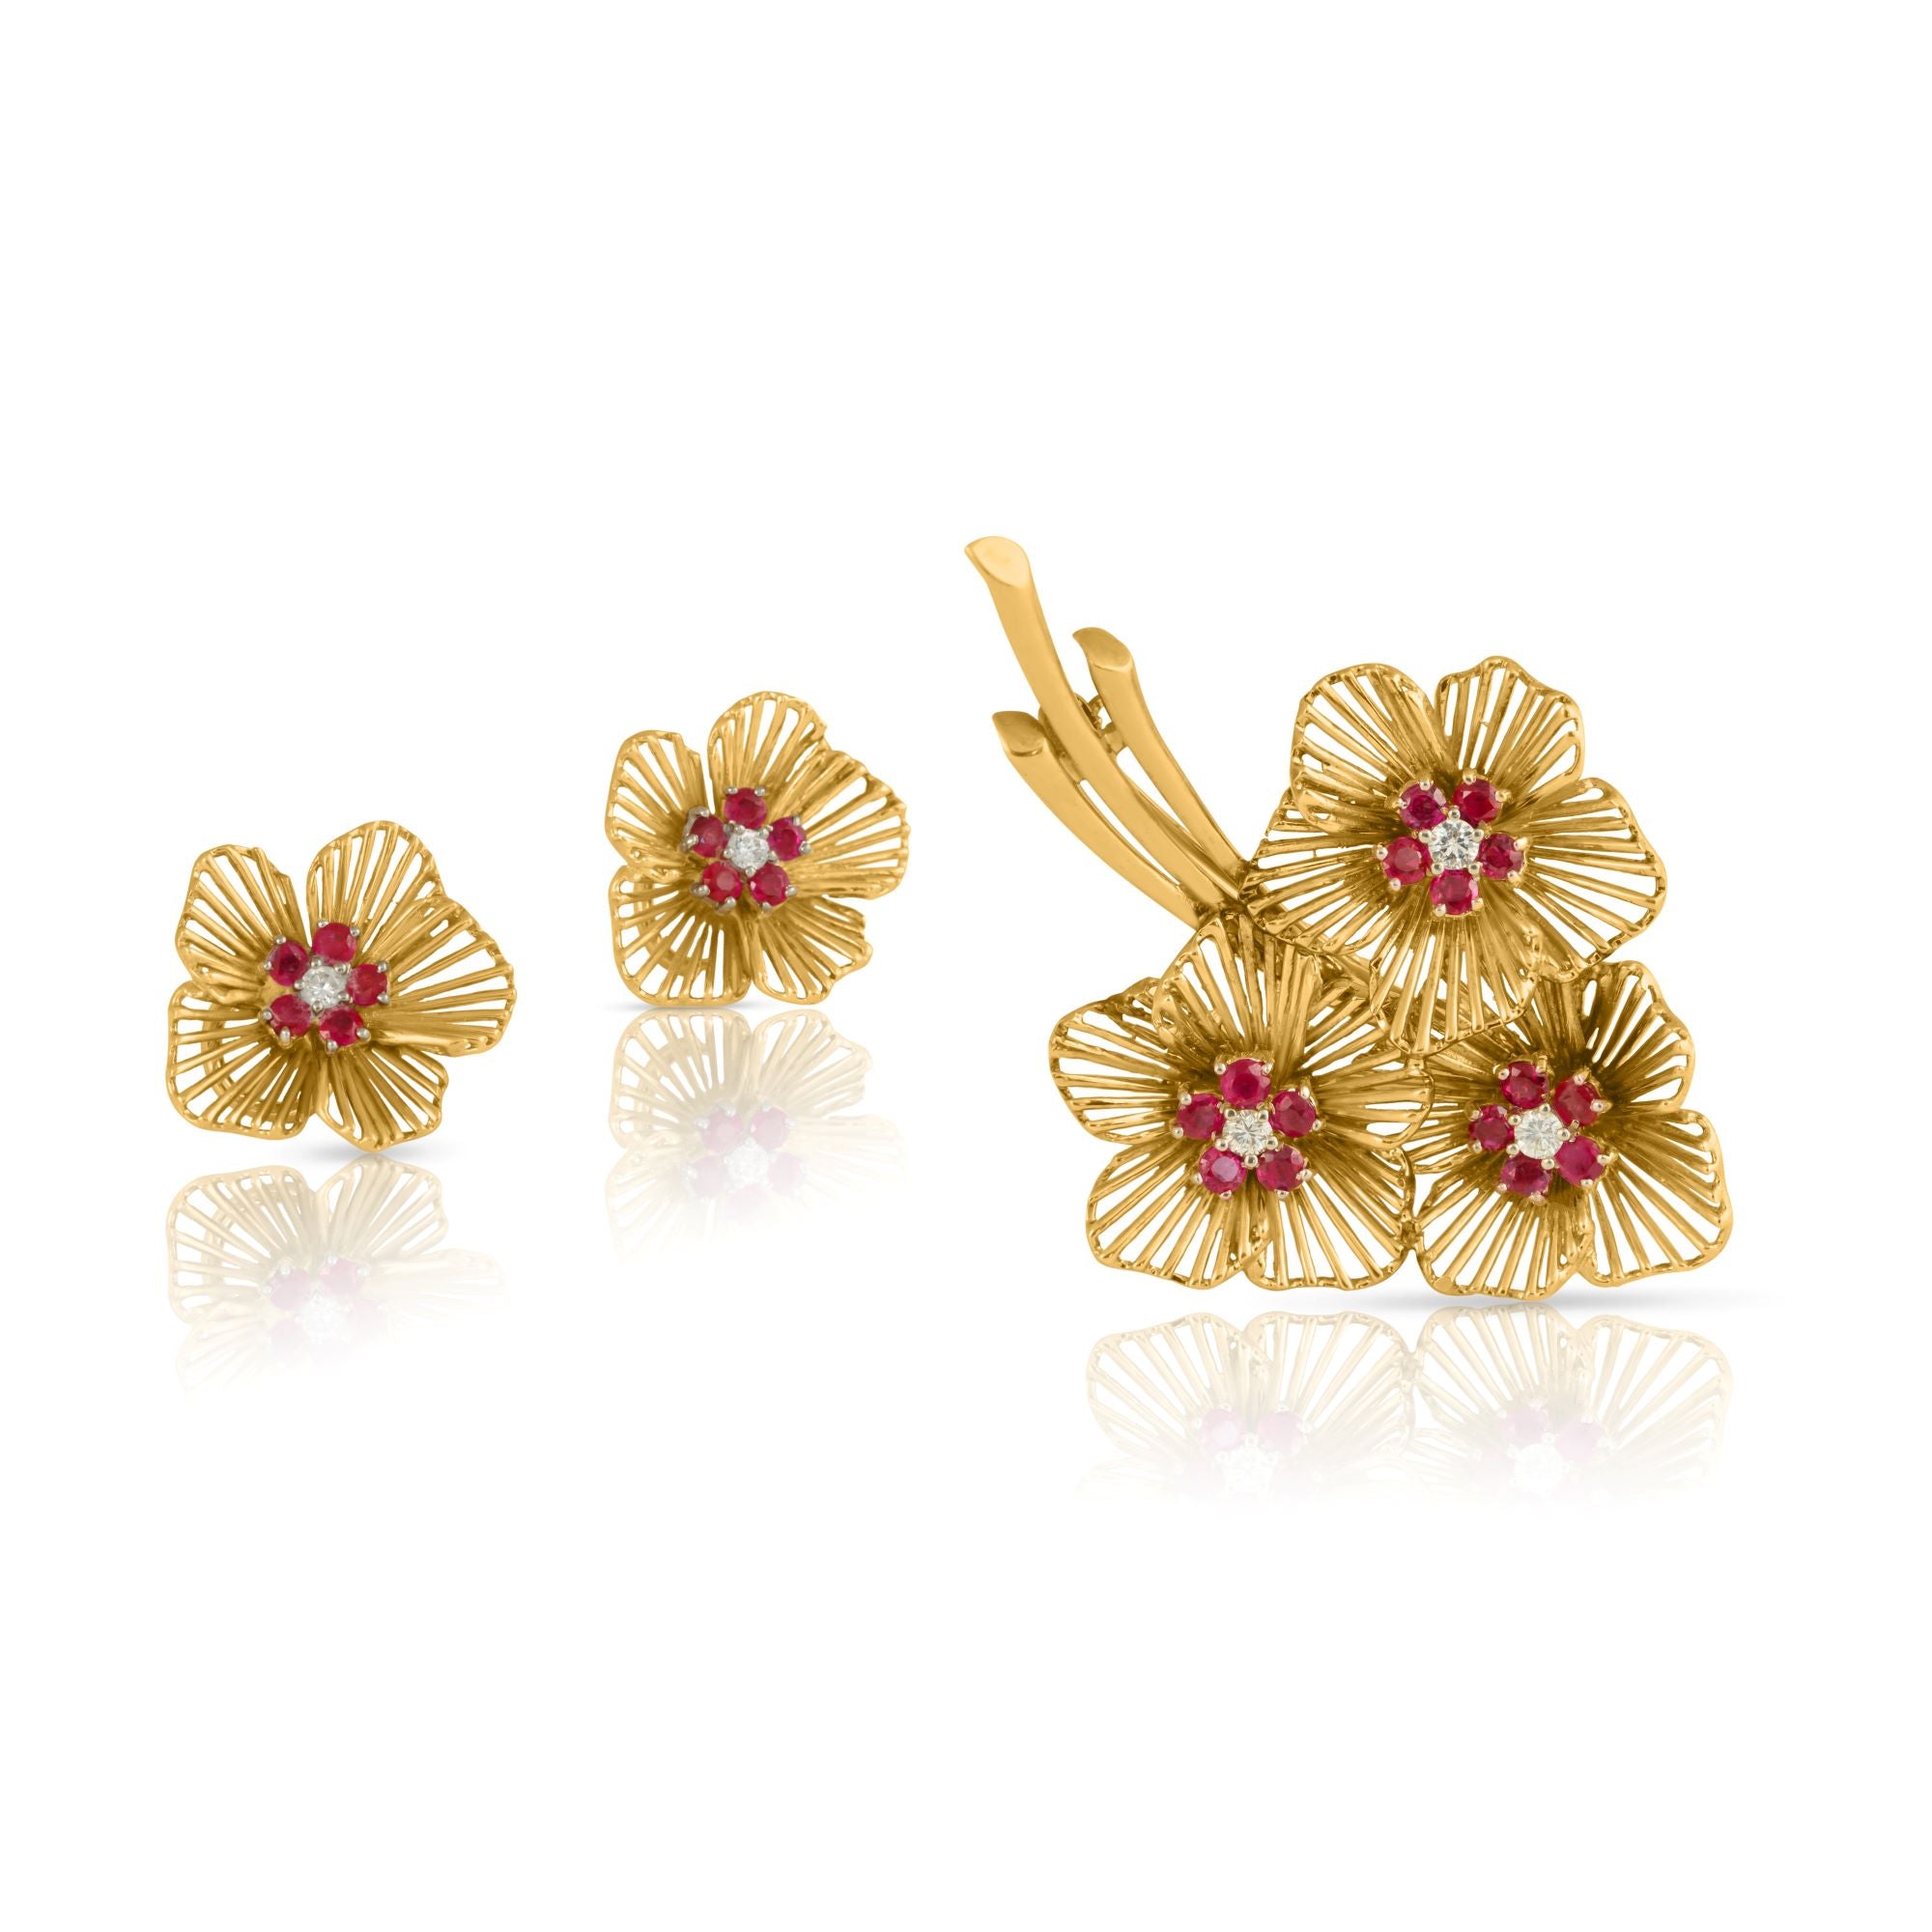 复古金红宝石和钻石花卉耳环和胸针套装